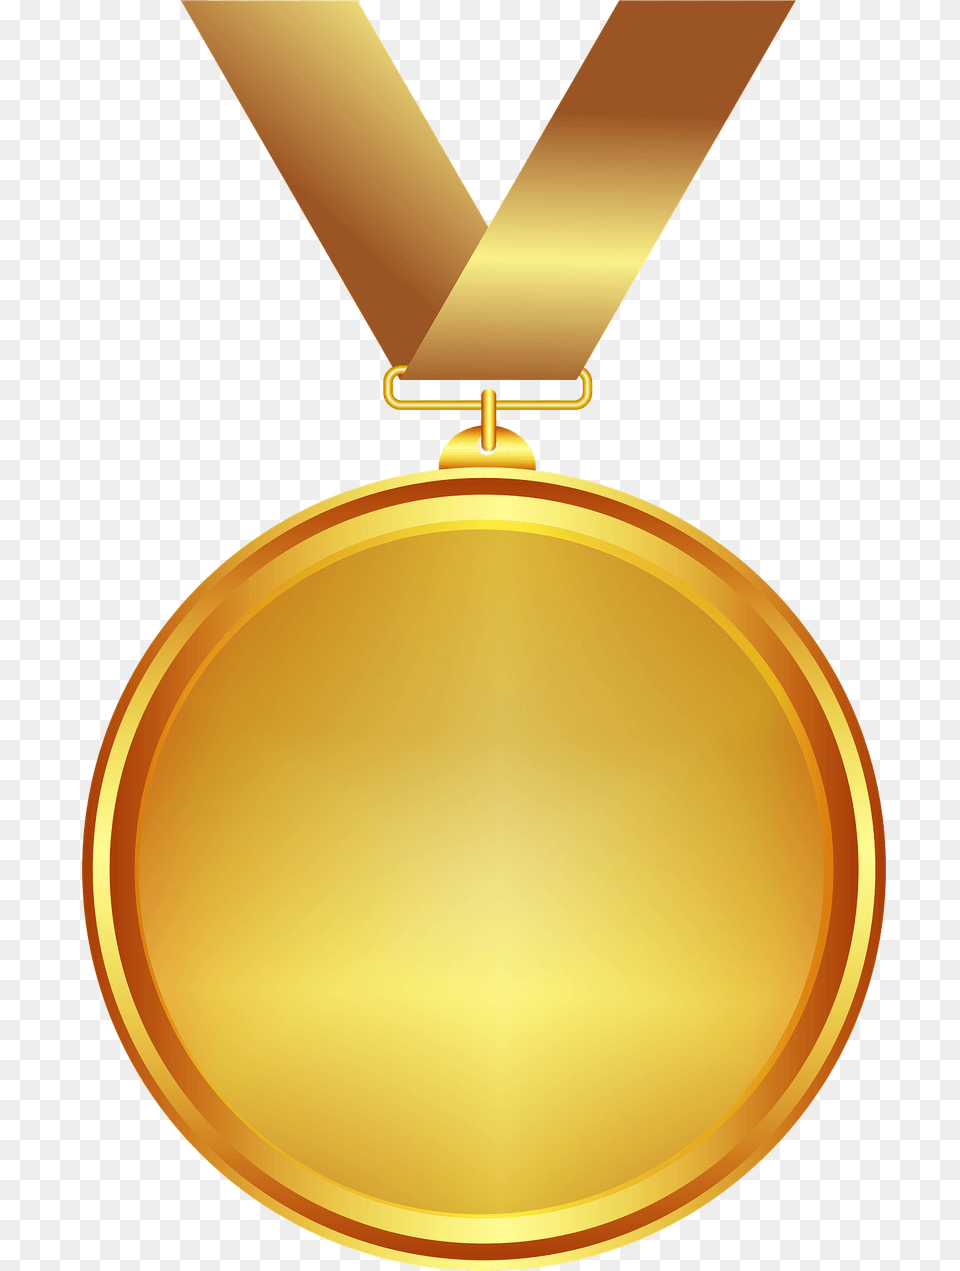 Gold Medal Clipart, Gold Medal, Trophy Png Image